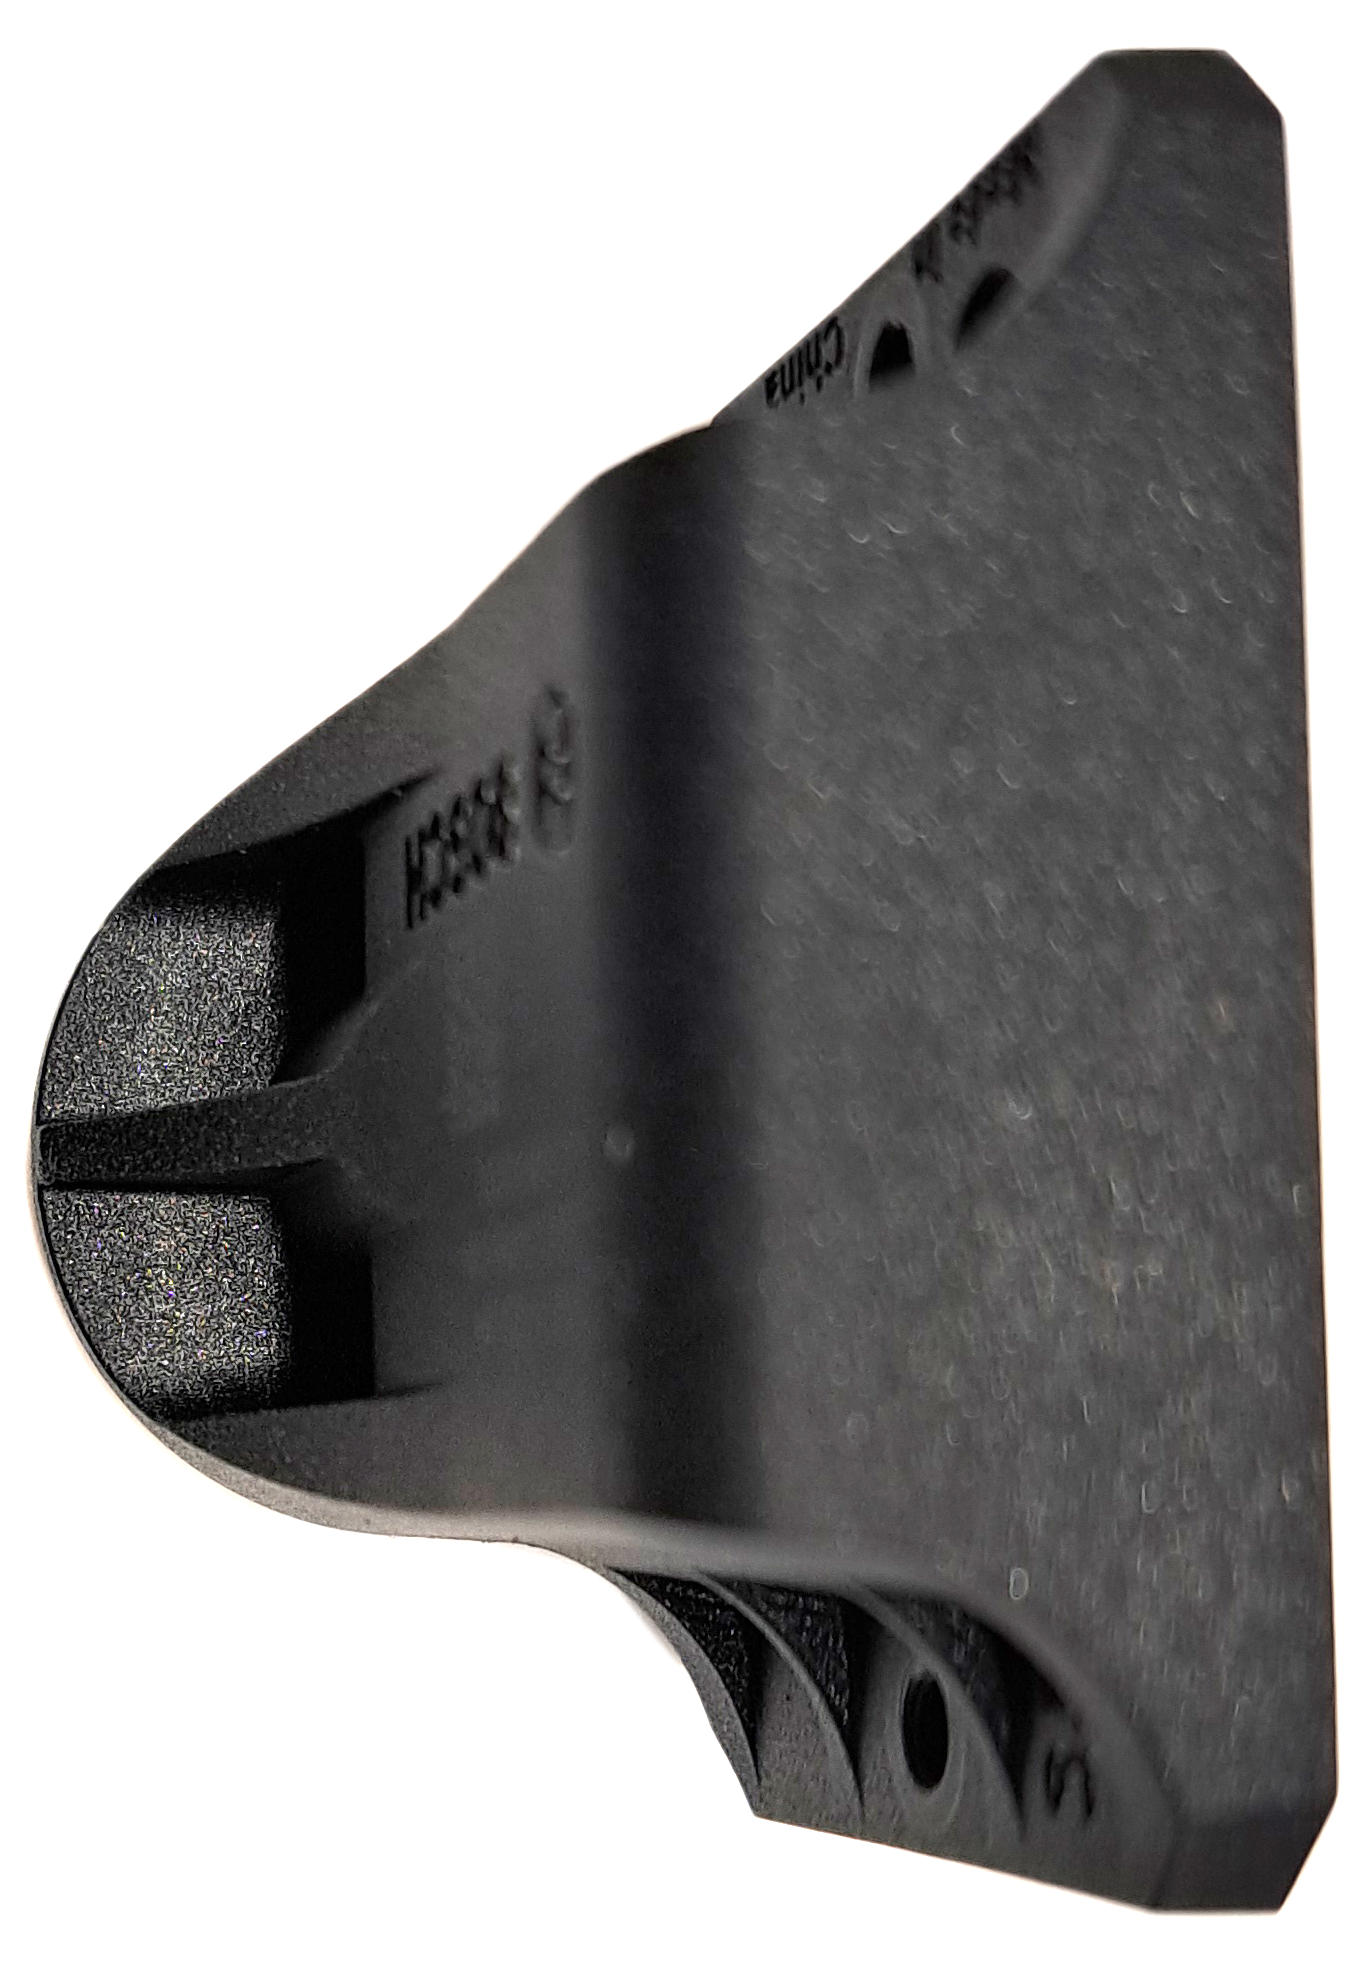 Bosch Adapterschale für 1-Arm-Halter